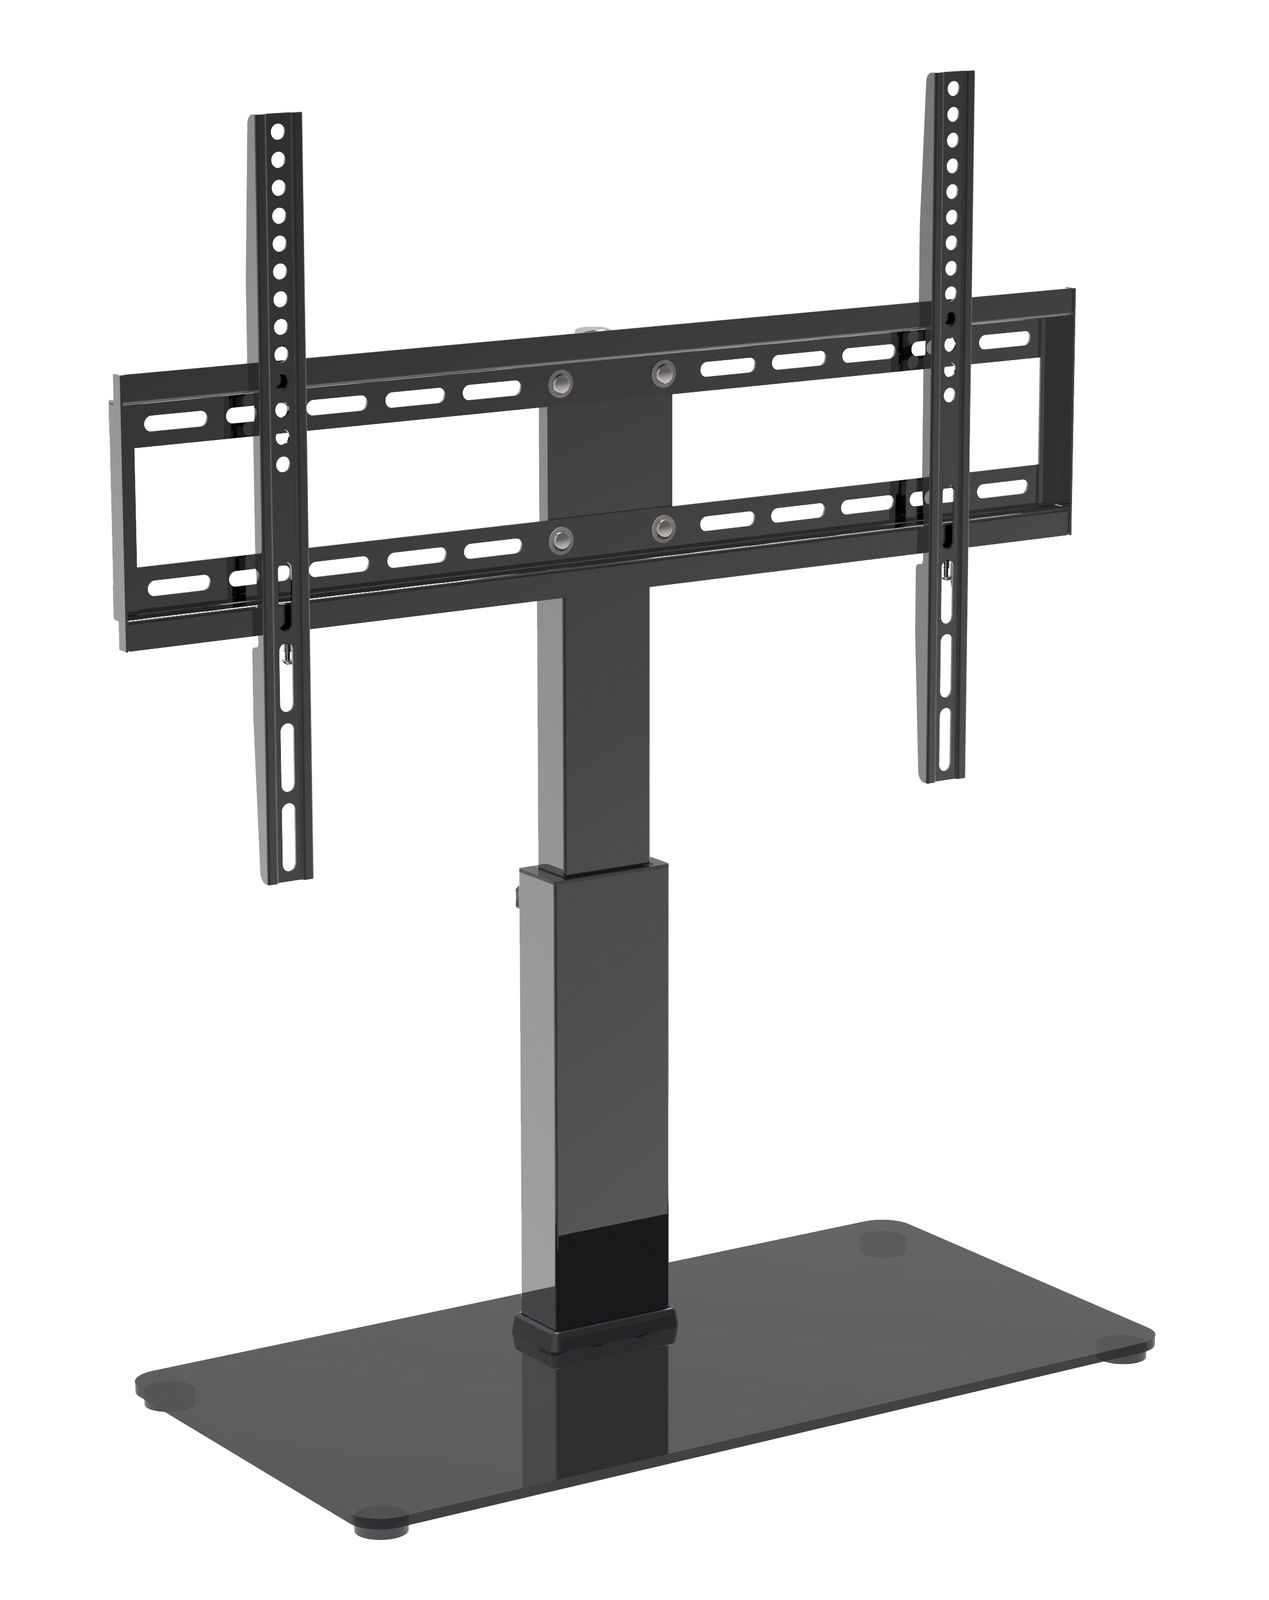 Standfuß für LCD TV Bildschirm-Drehfunktion My Wall HP2BR für Bildschirme 32''-65" (81-165 cm),Belastung bis 40 kg schwarz mit Drehfunktion